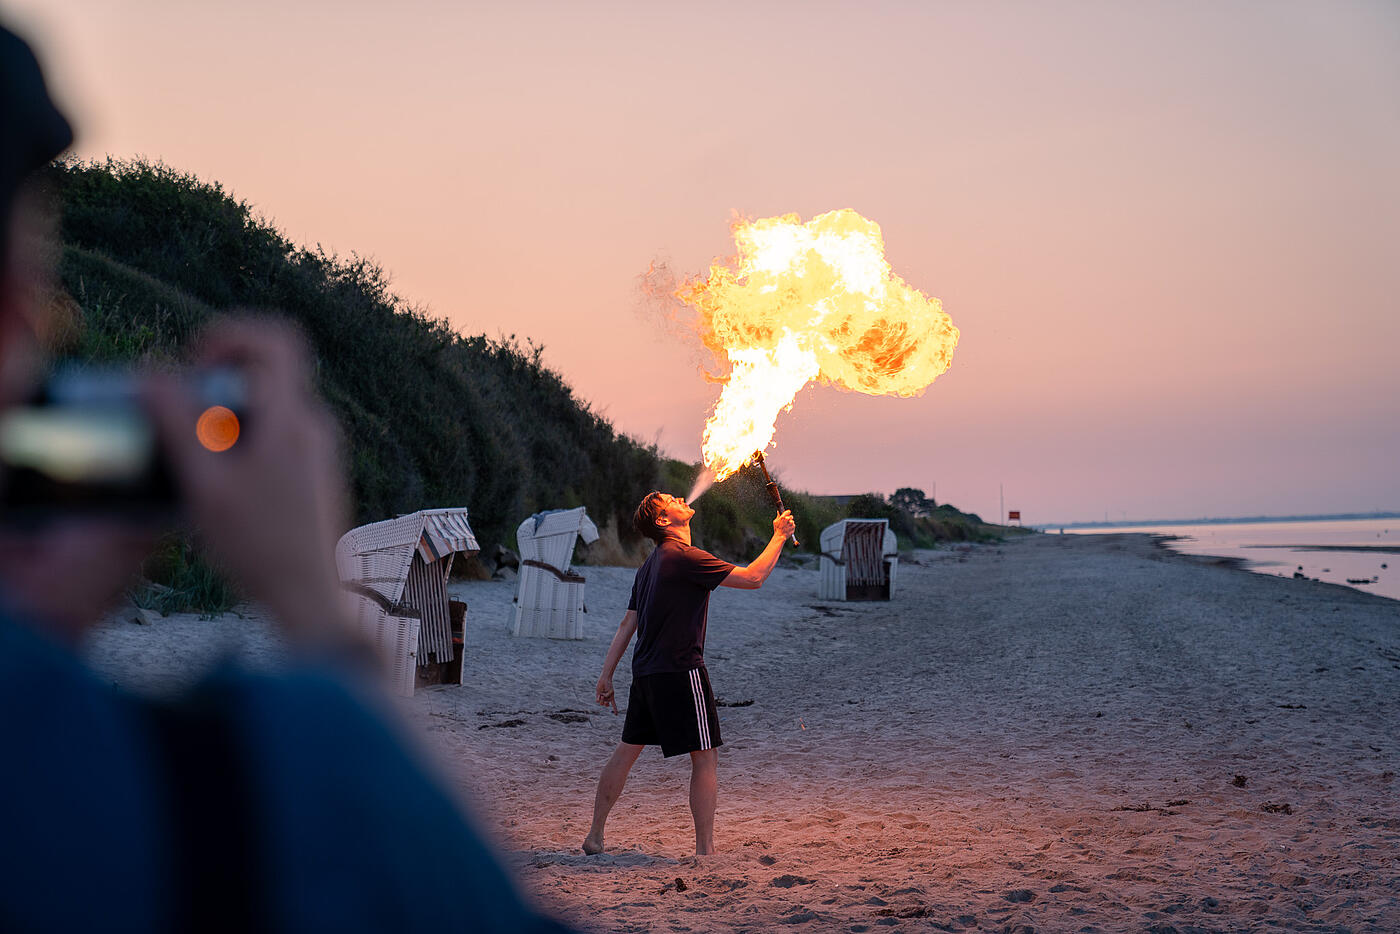 Ein einzelner Mitarbeiter von visuellverstehen übt sich im Feuerspucken, im Hintergrund der abendliche Strand.